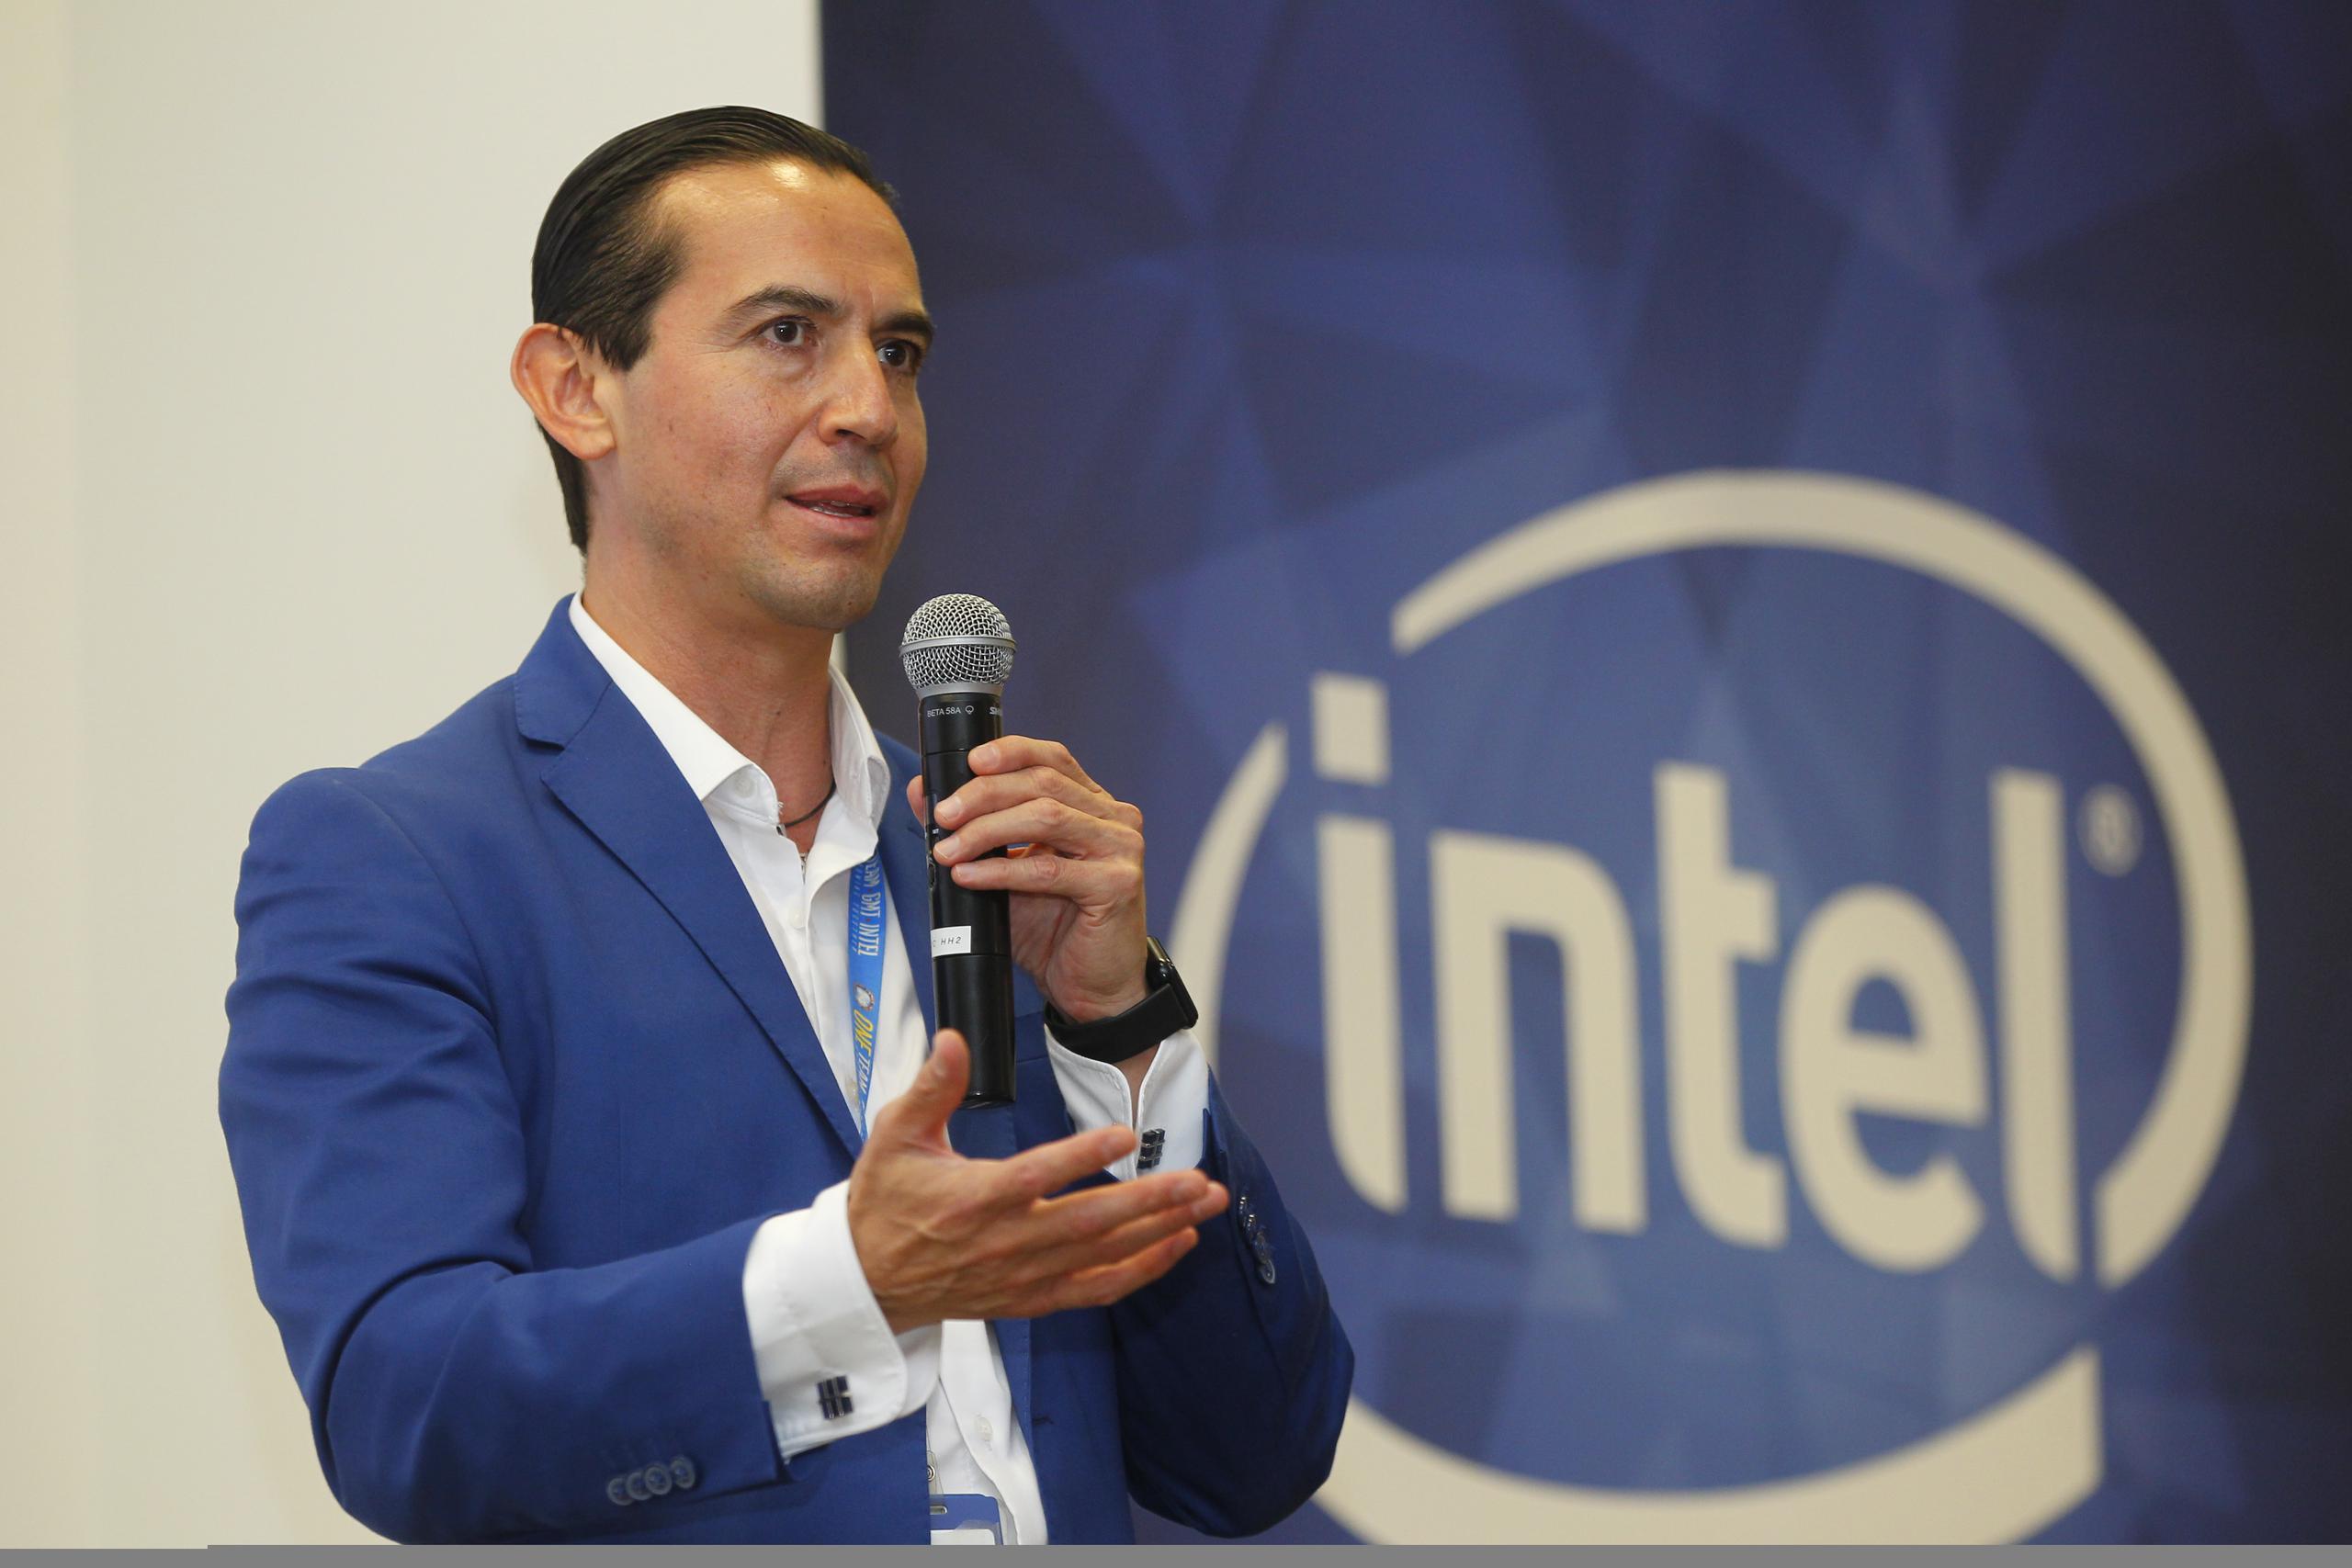 El director de Relaciones con Gobierno de Intel en México, Isaac Ávila, participa en una conferencia en las instalaciones de Intel Centro de Diseño Guadalajara (GDC), el 8 de julio de 2022 en la ciudad de Zapopan, Jalisco, en México. (EFE/ Francisco Guasco)